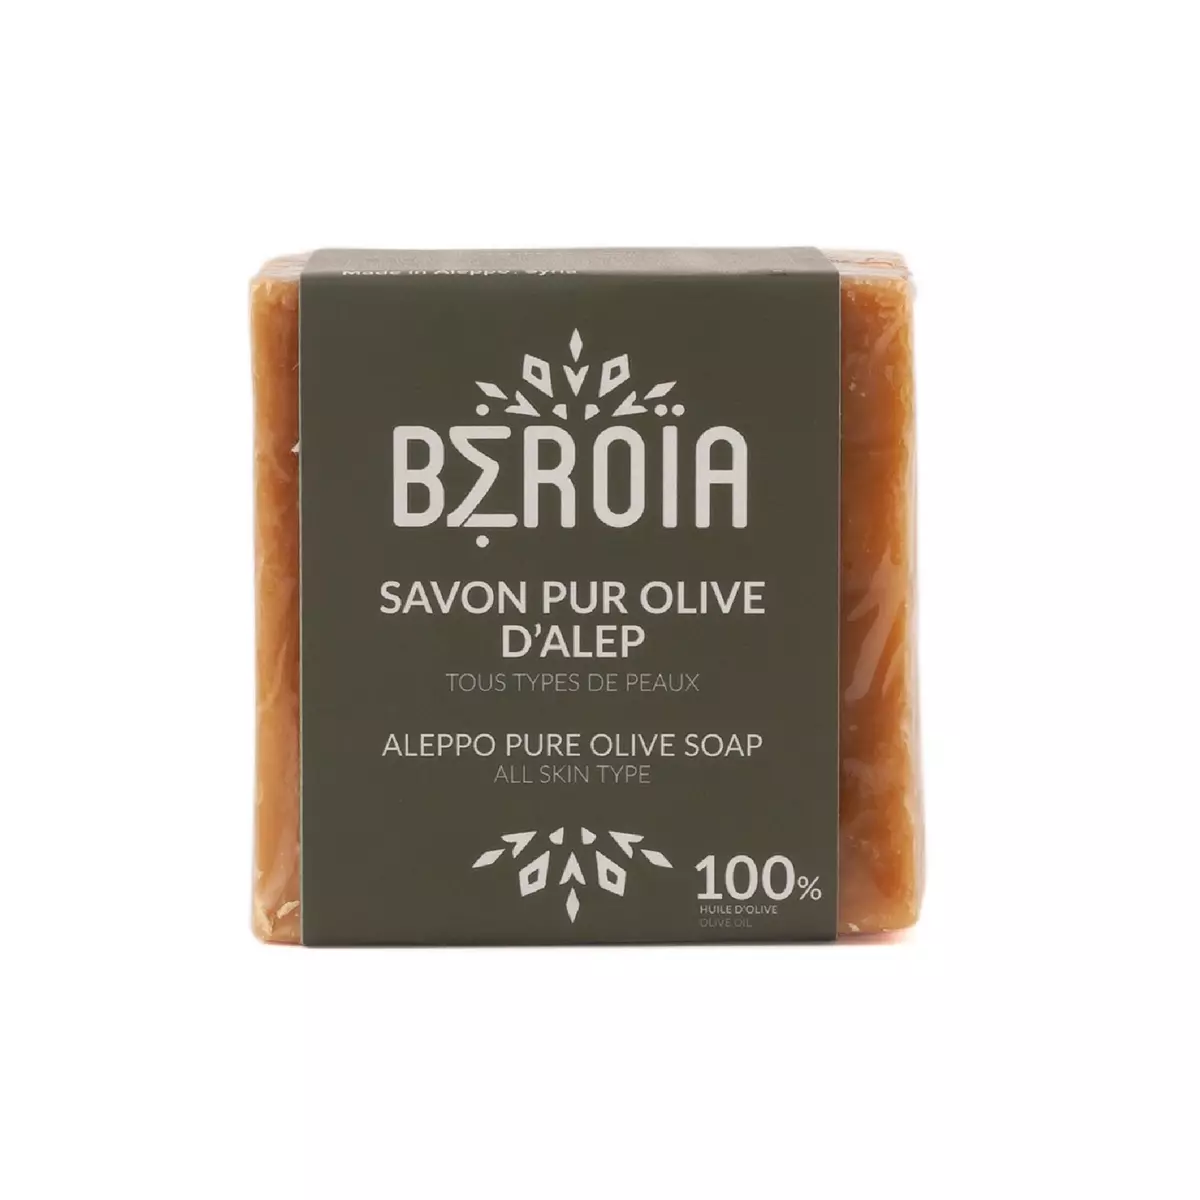 BEROIA Savon pur olive d'Alep tous types de peaux 200g